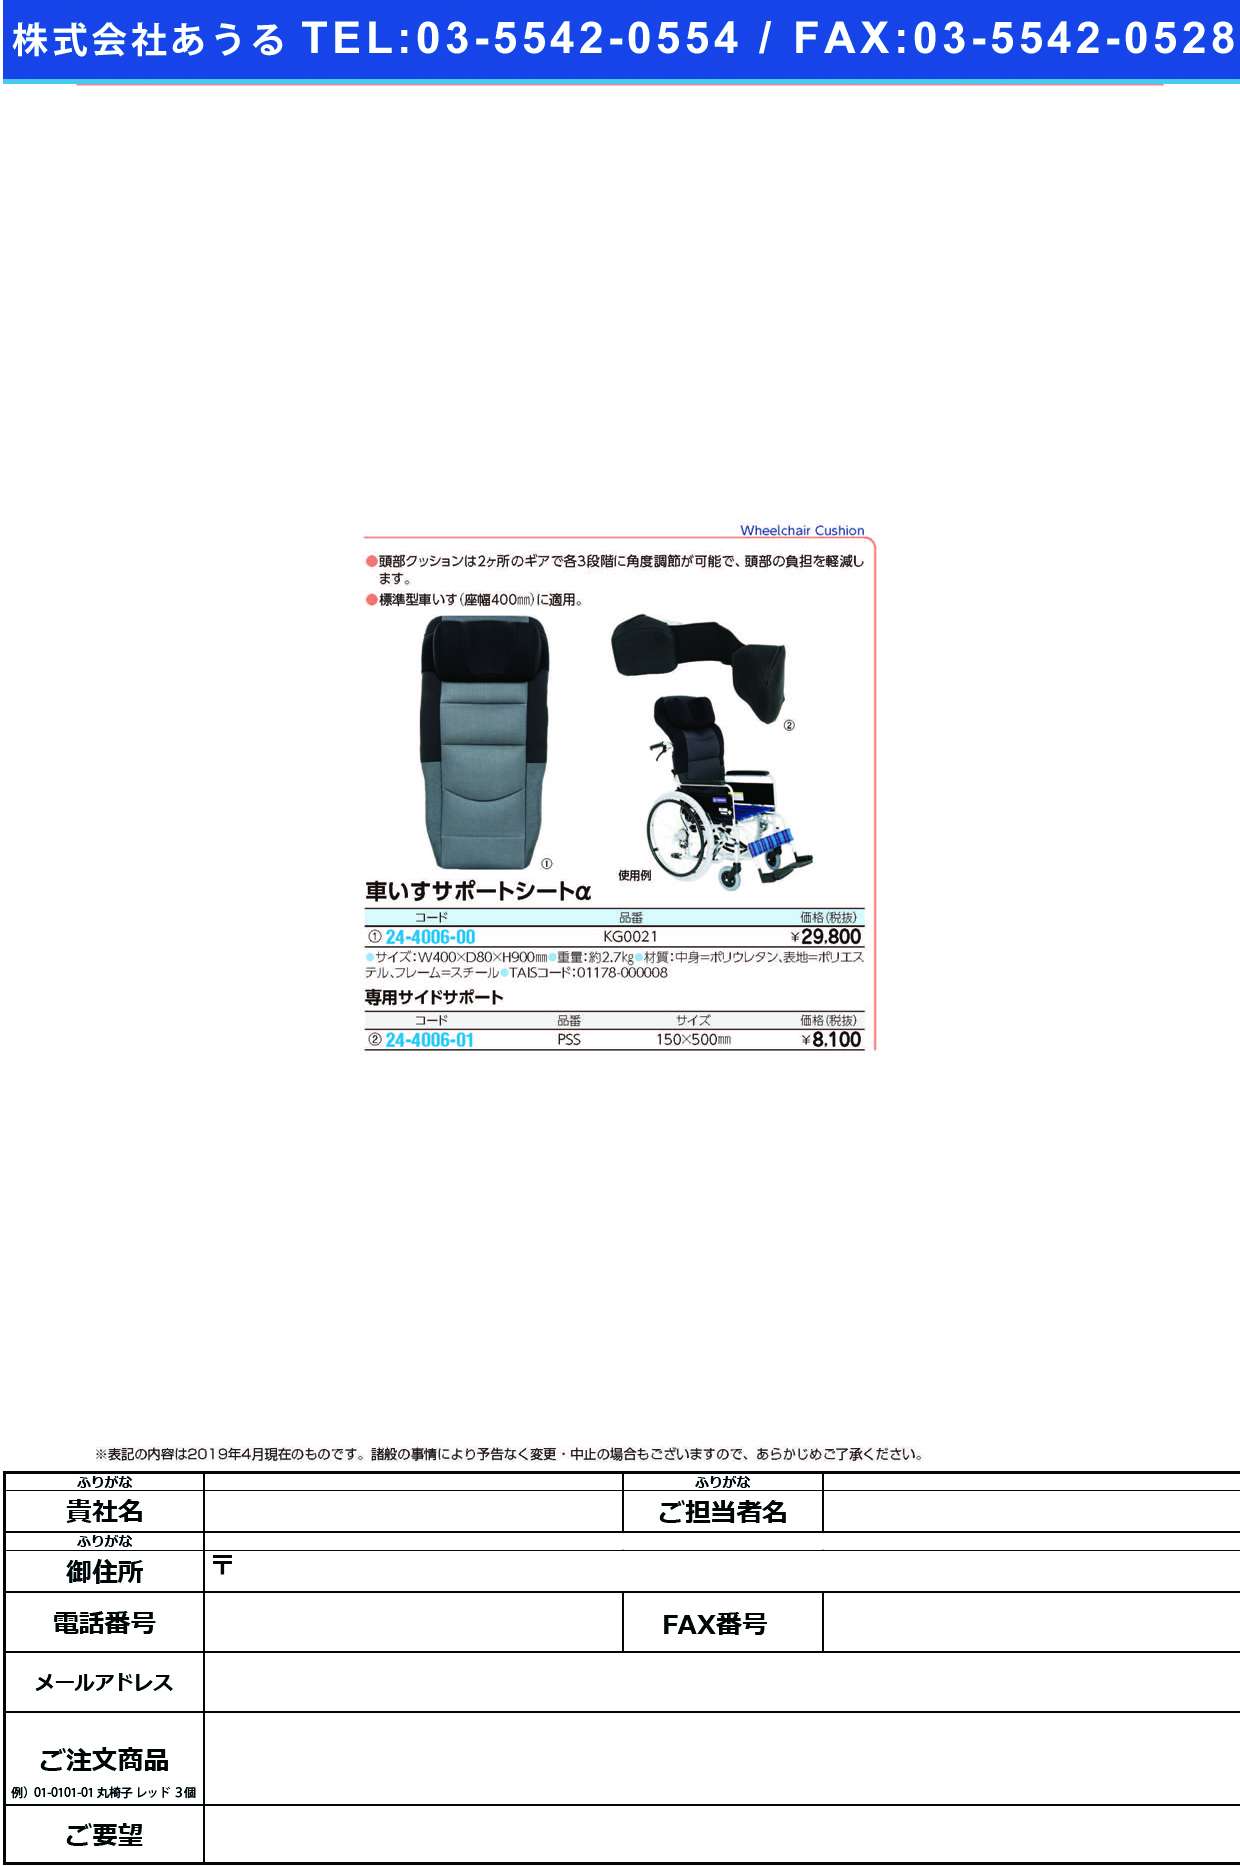 (24-4006-00)車いすサポートシートα KG0021(ﾌﾞﾗｯｸ) ｸﾙﾏｲｽｻﾎﾟｰﾄｼｰﾄｱﾙﾌｧ【1個単位】【2019年カタログ商品】